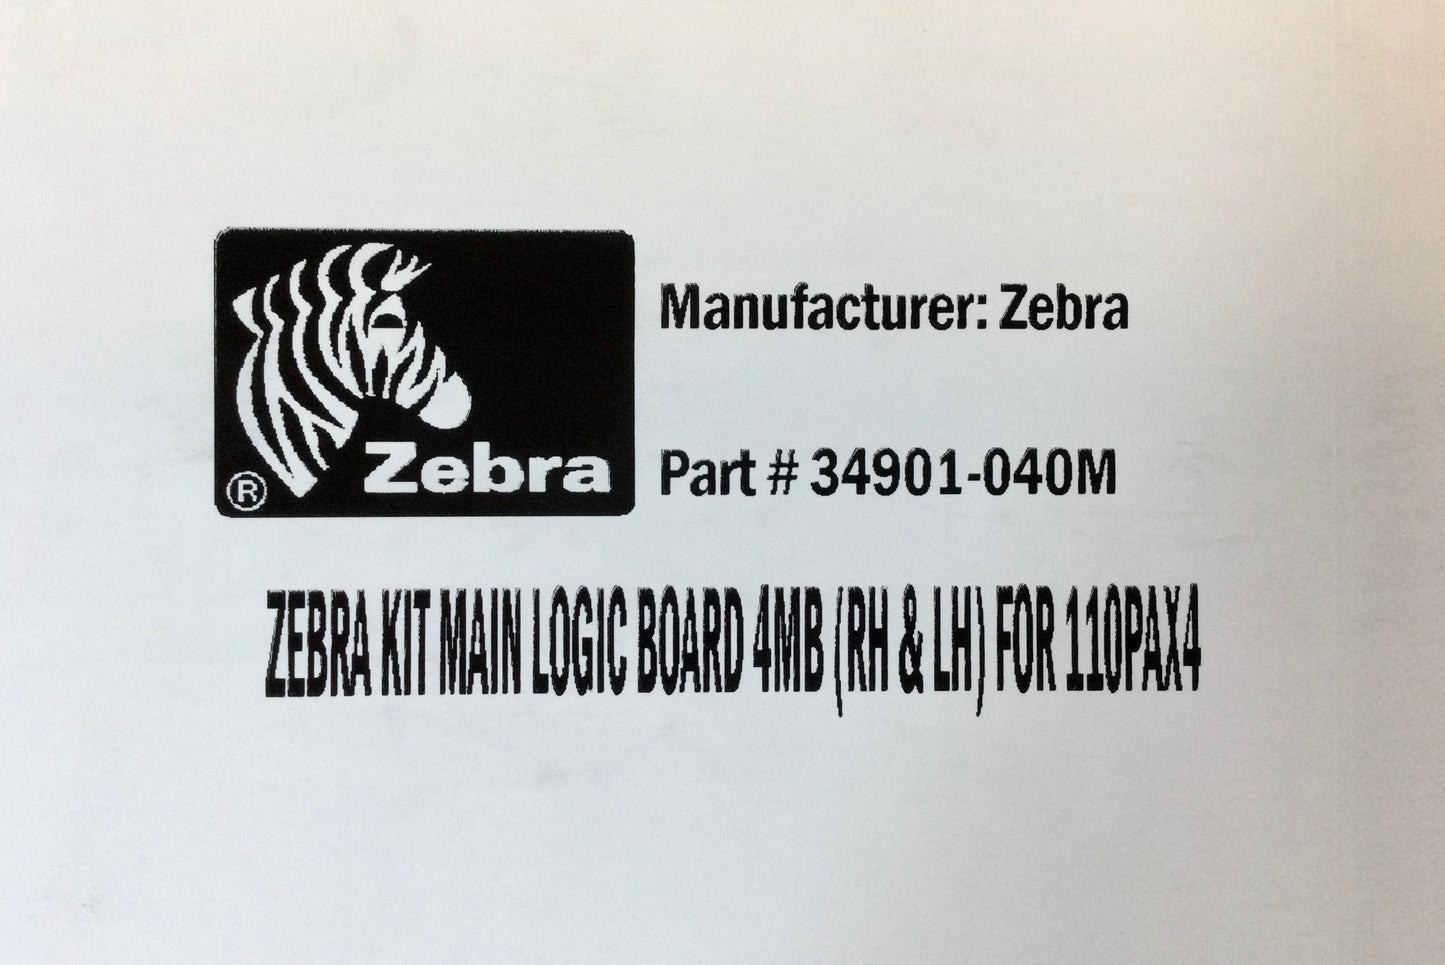 Zebra Logic Board 110PAX4 - PN# 34901-040M (MLB) 4MB RH and LH